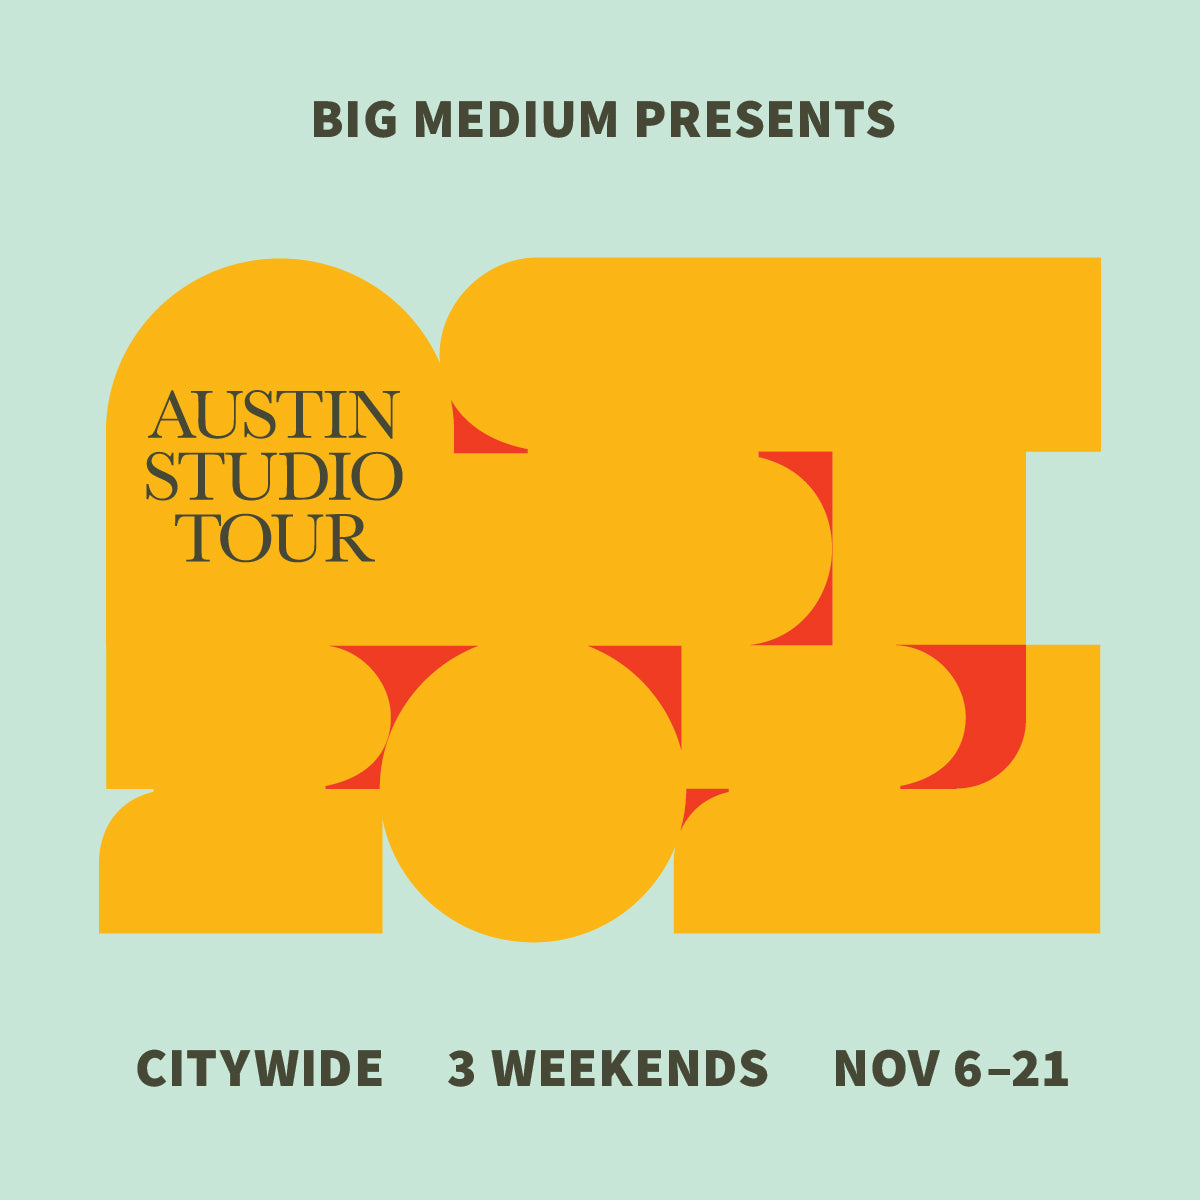 Austin Studio Tour: November 13-14 and November 20-21